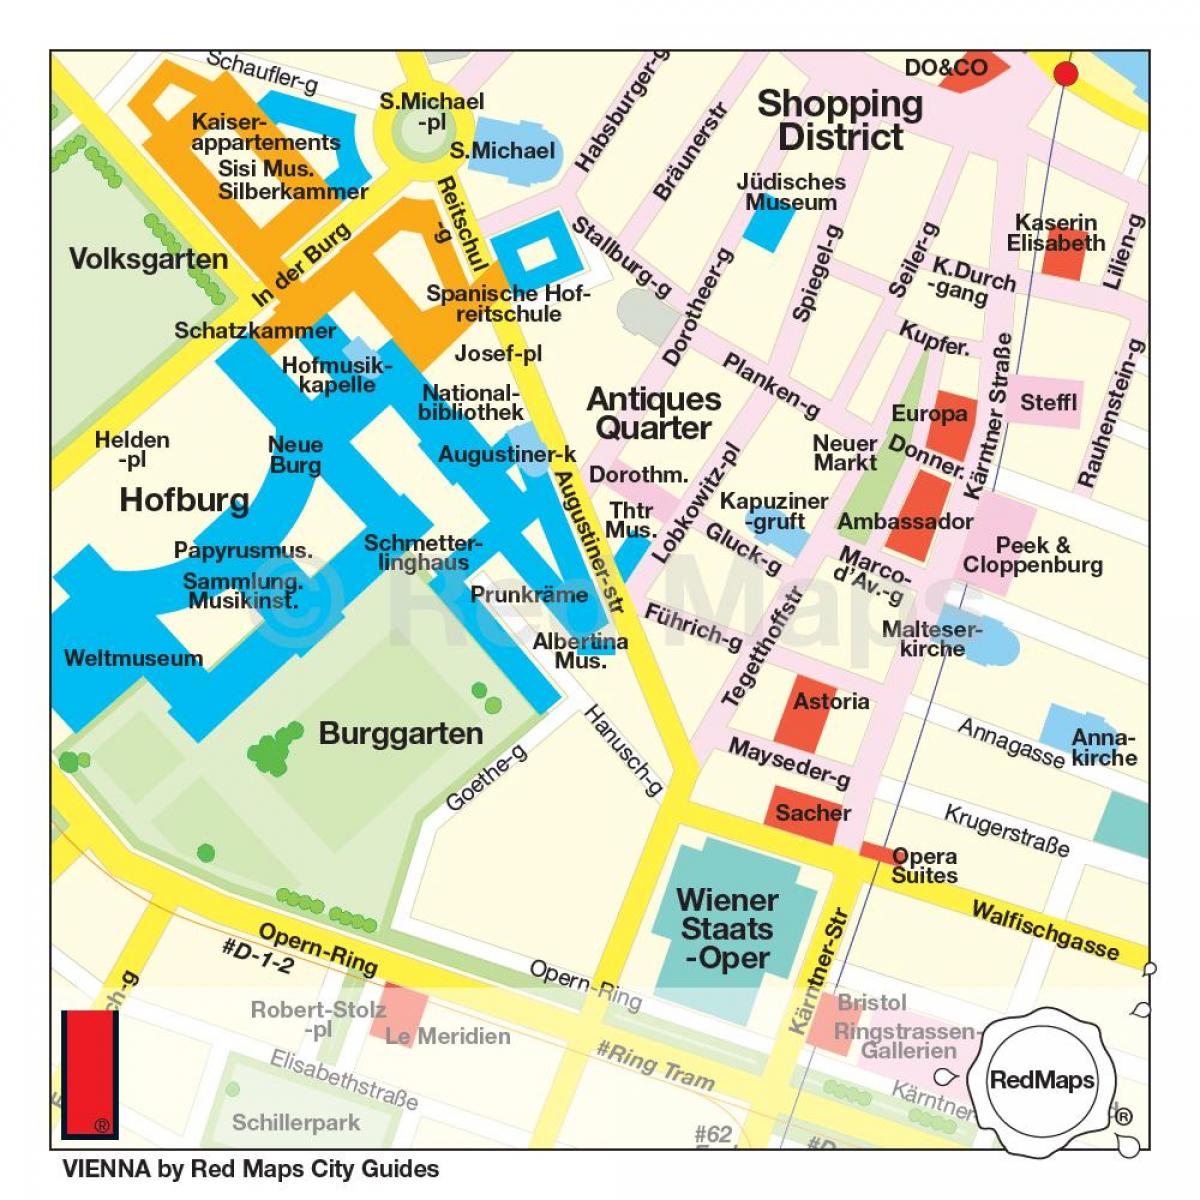 خريطة فيينا للتسوق